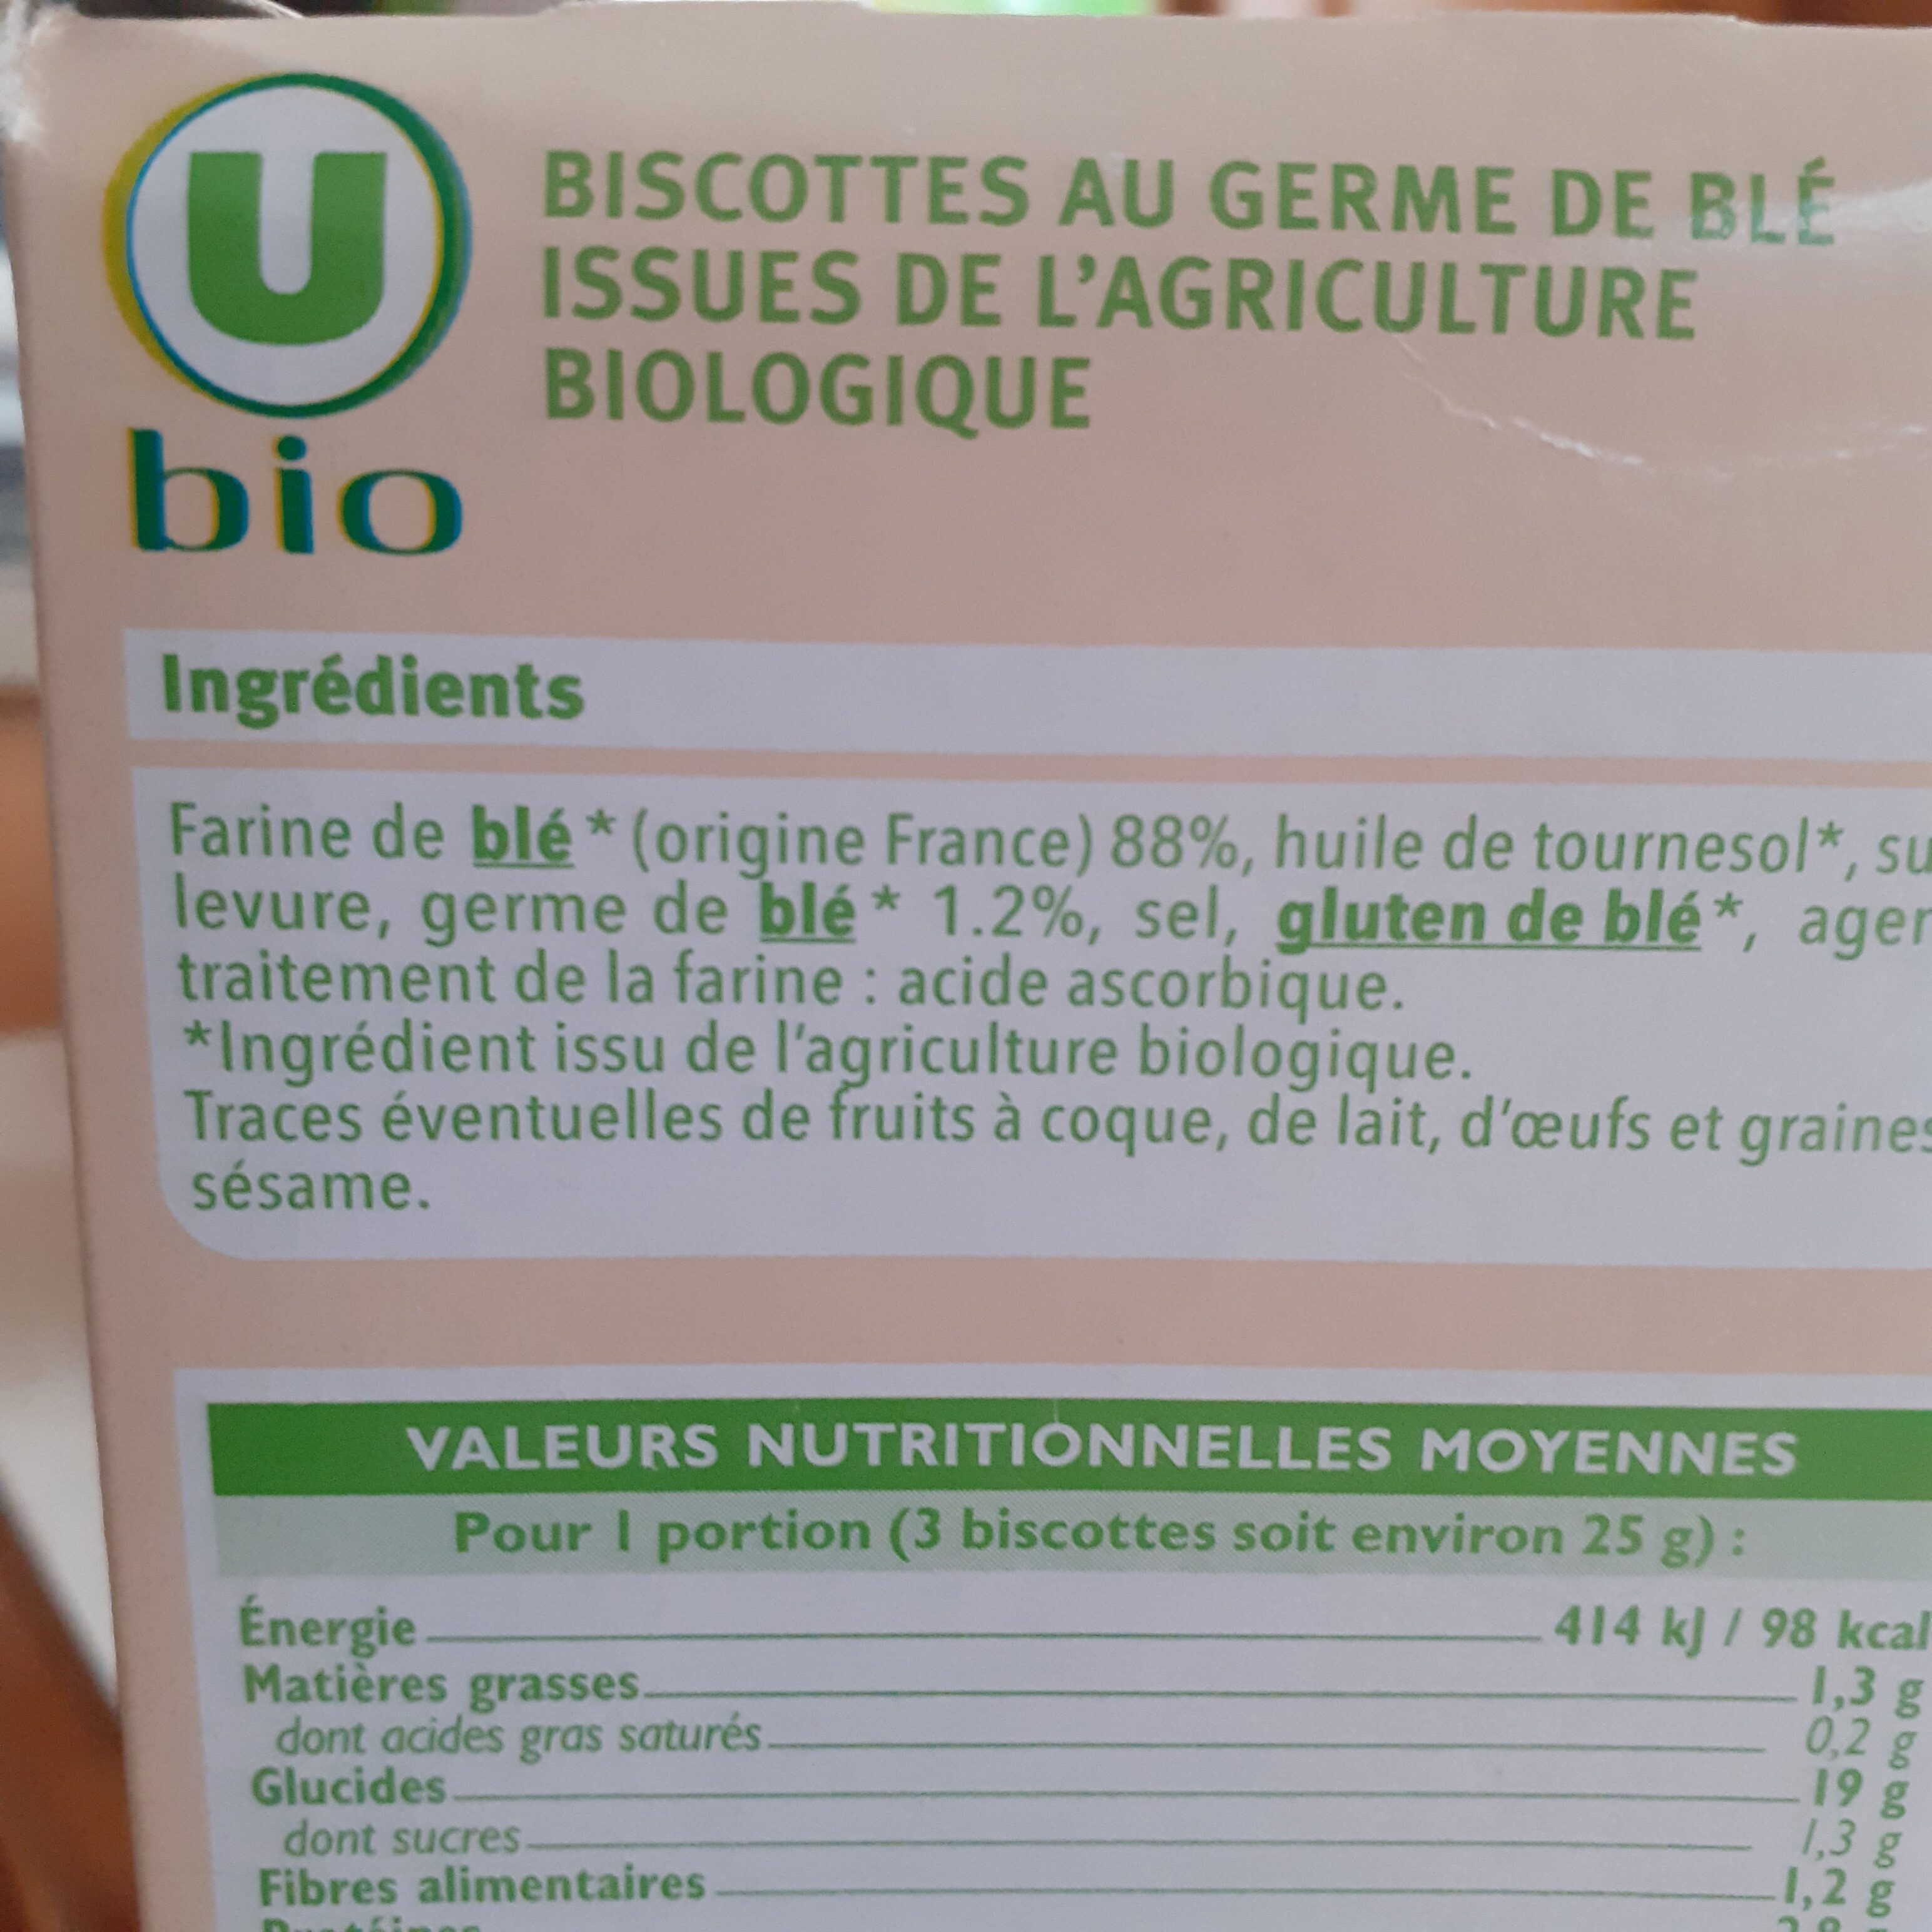 Biscottes au froment germe de blé - Ingredients - fr